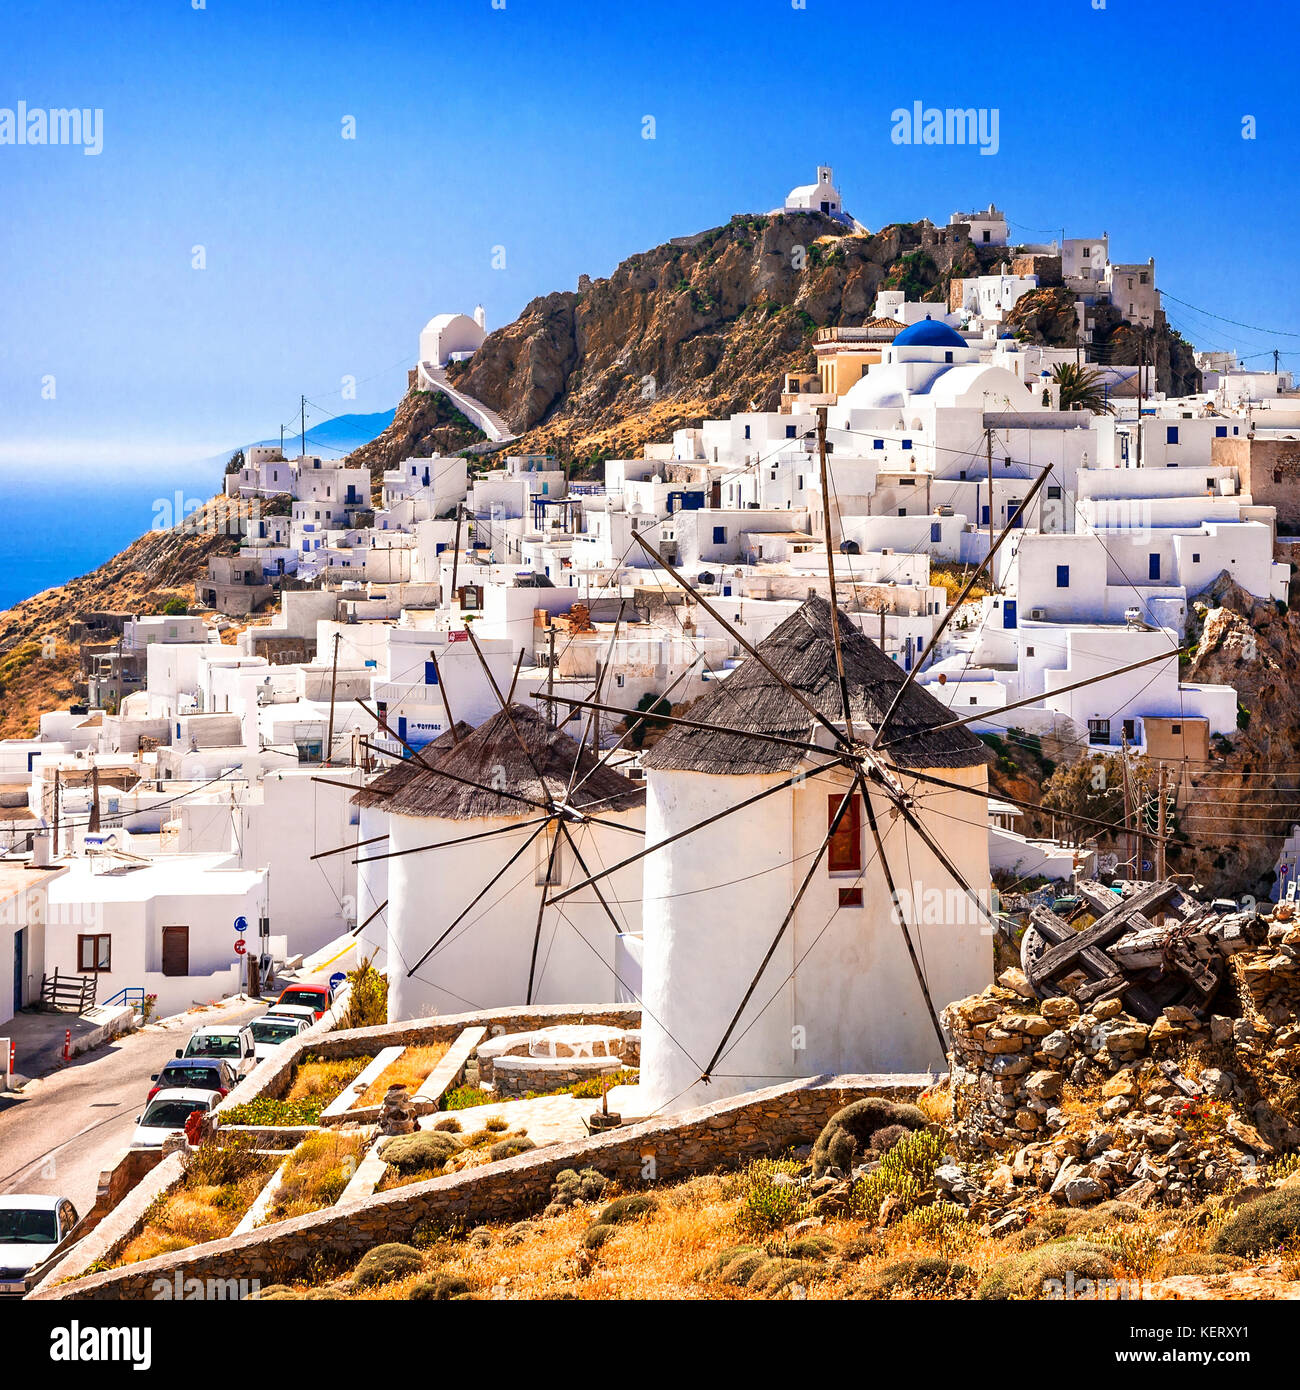 Los molinos de viento y casas blancas tradicionales,chora village, isla Serifos,Grecia. Foto de stock